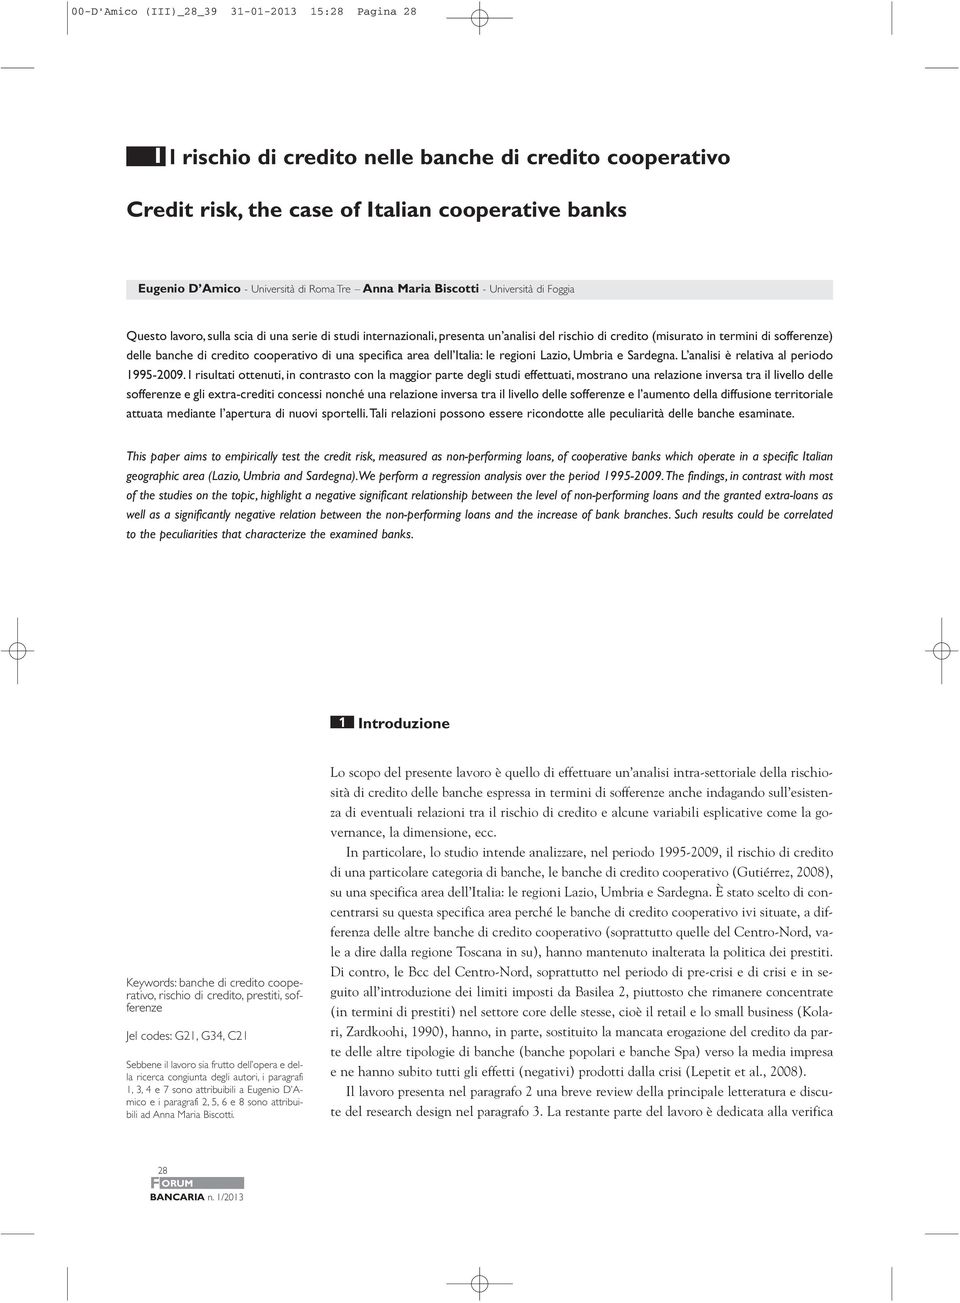 banche di credito cooperativo di una specifica area dell Italia: le regioni Lazio, Umbria e Sardegna. L analisi è relativa al periodo 1995-2009.